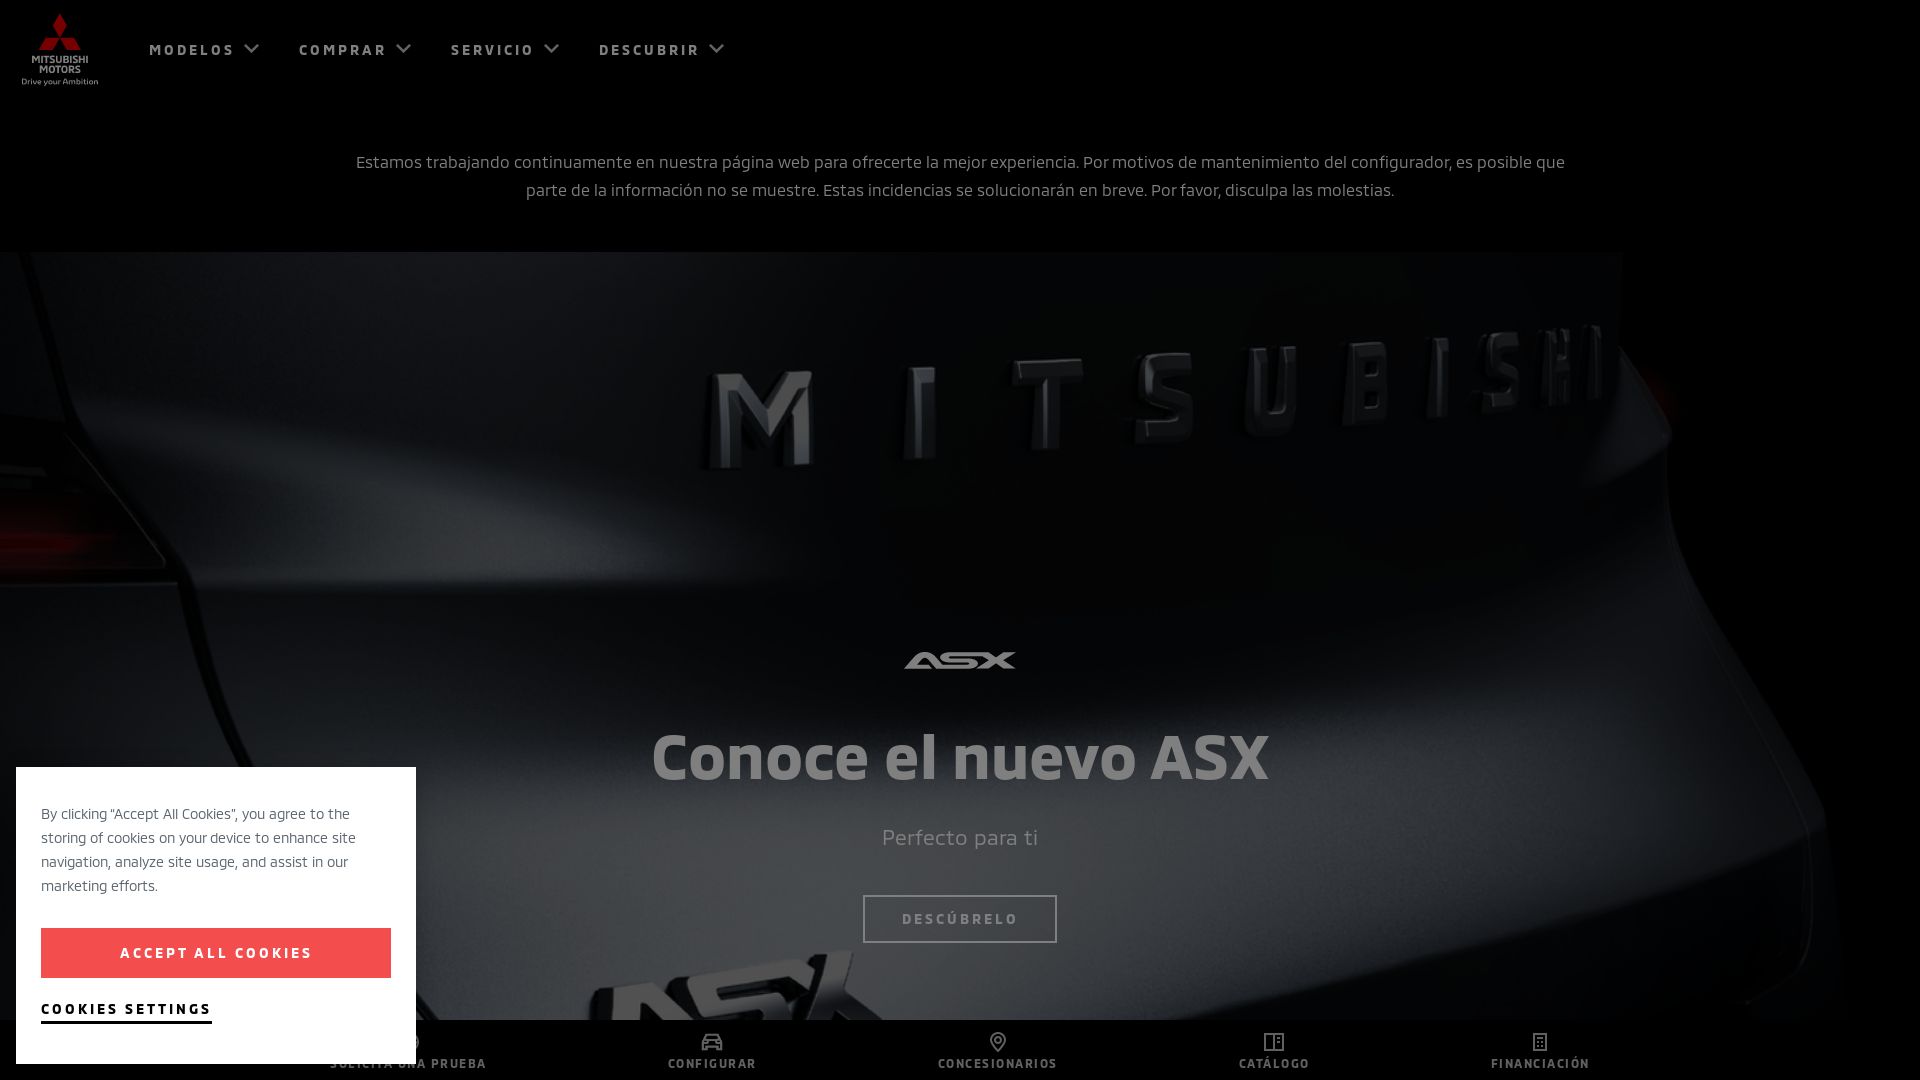 Статус сайта mitsubishi-motors.es ОНЛАЙН